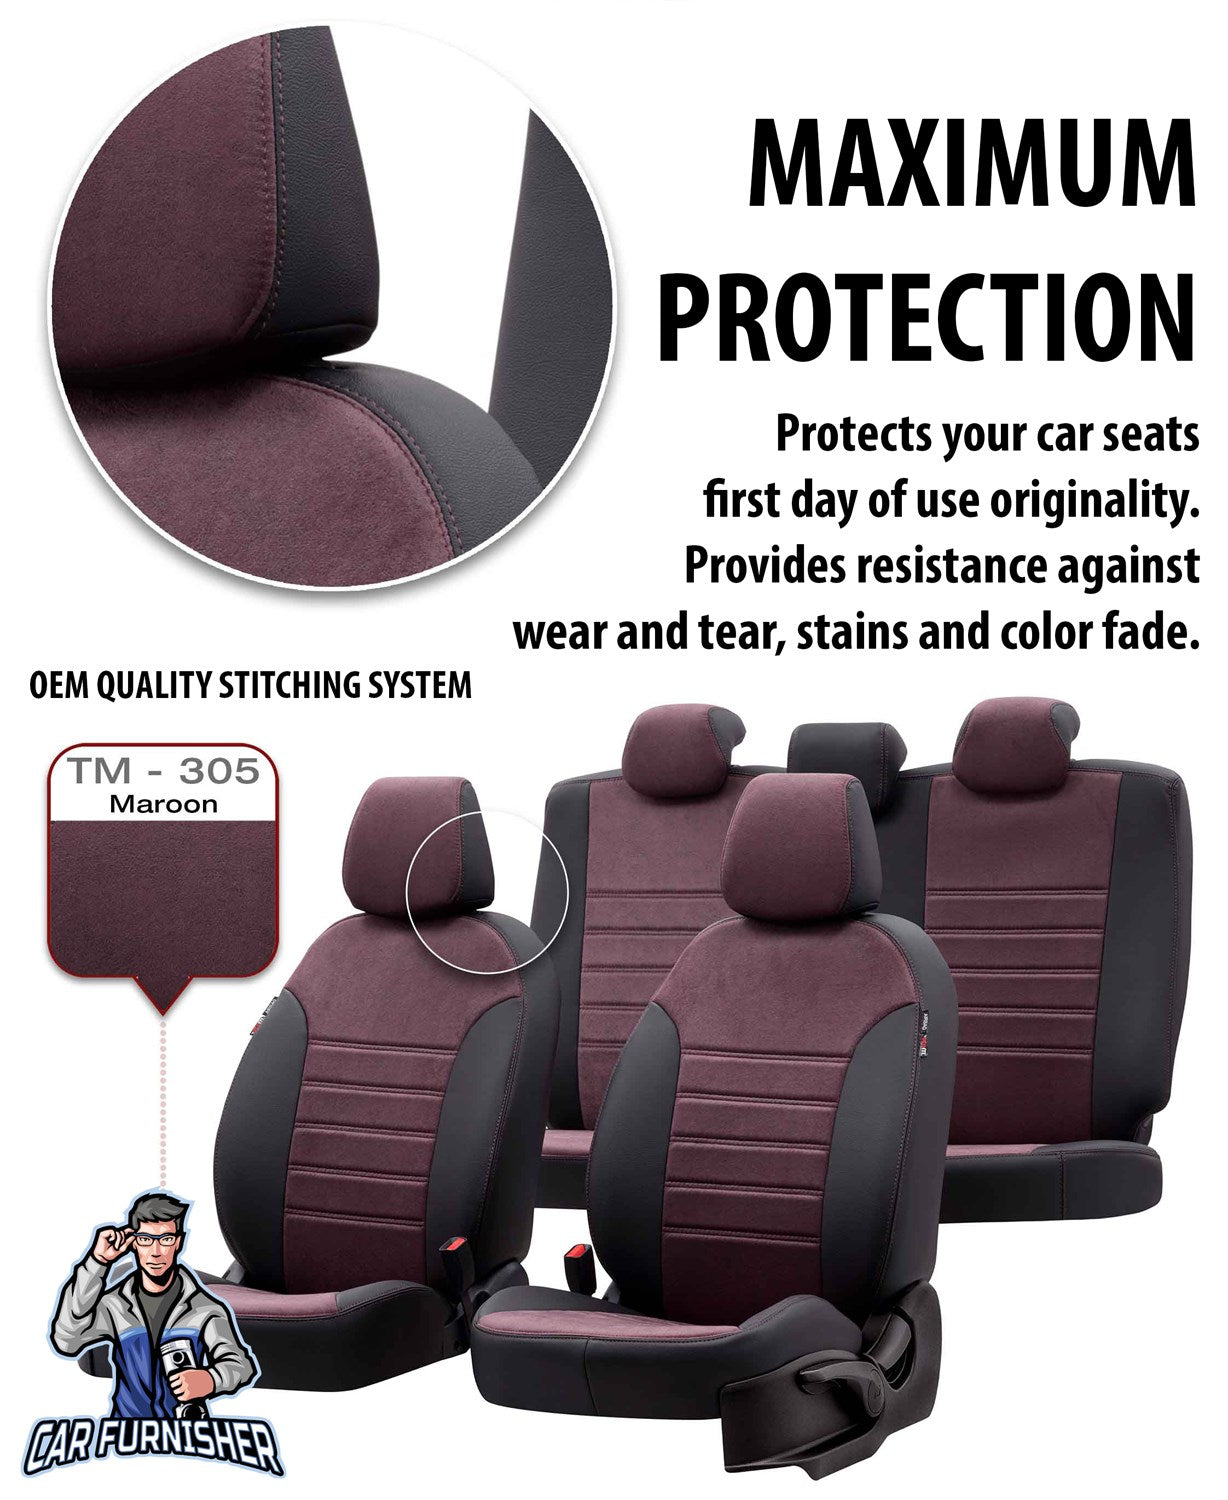 Citroen C4 Seat Cover Milano Suede Design Black Leather & Suede Fabric